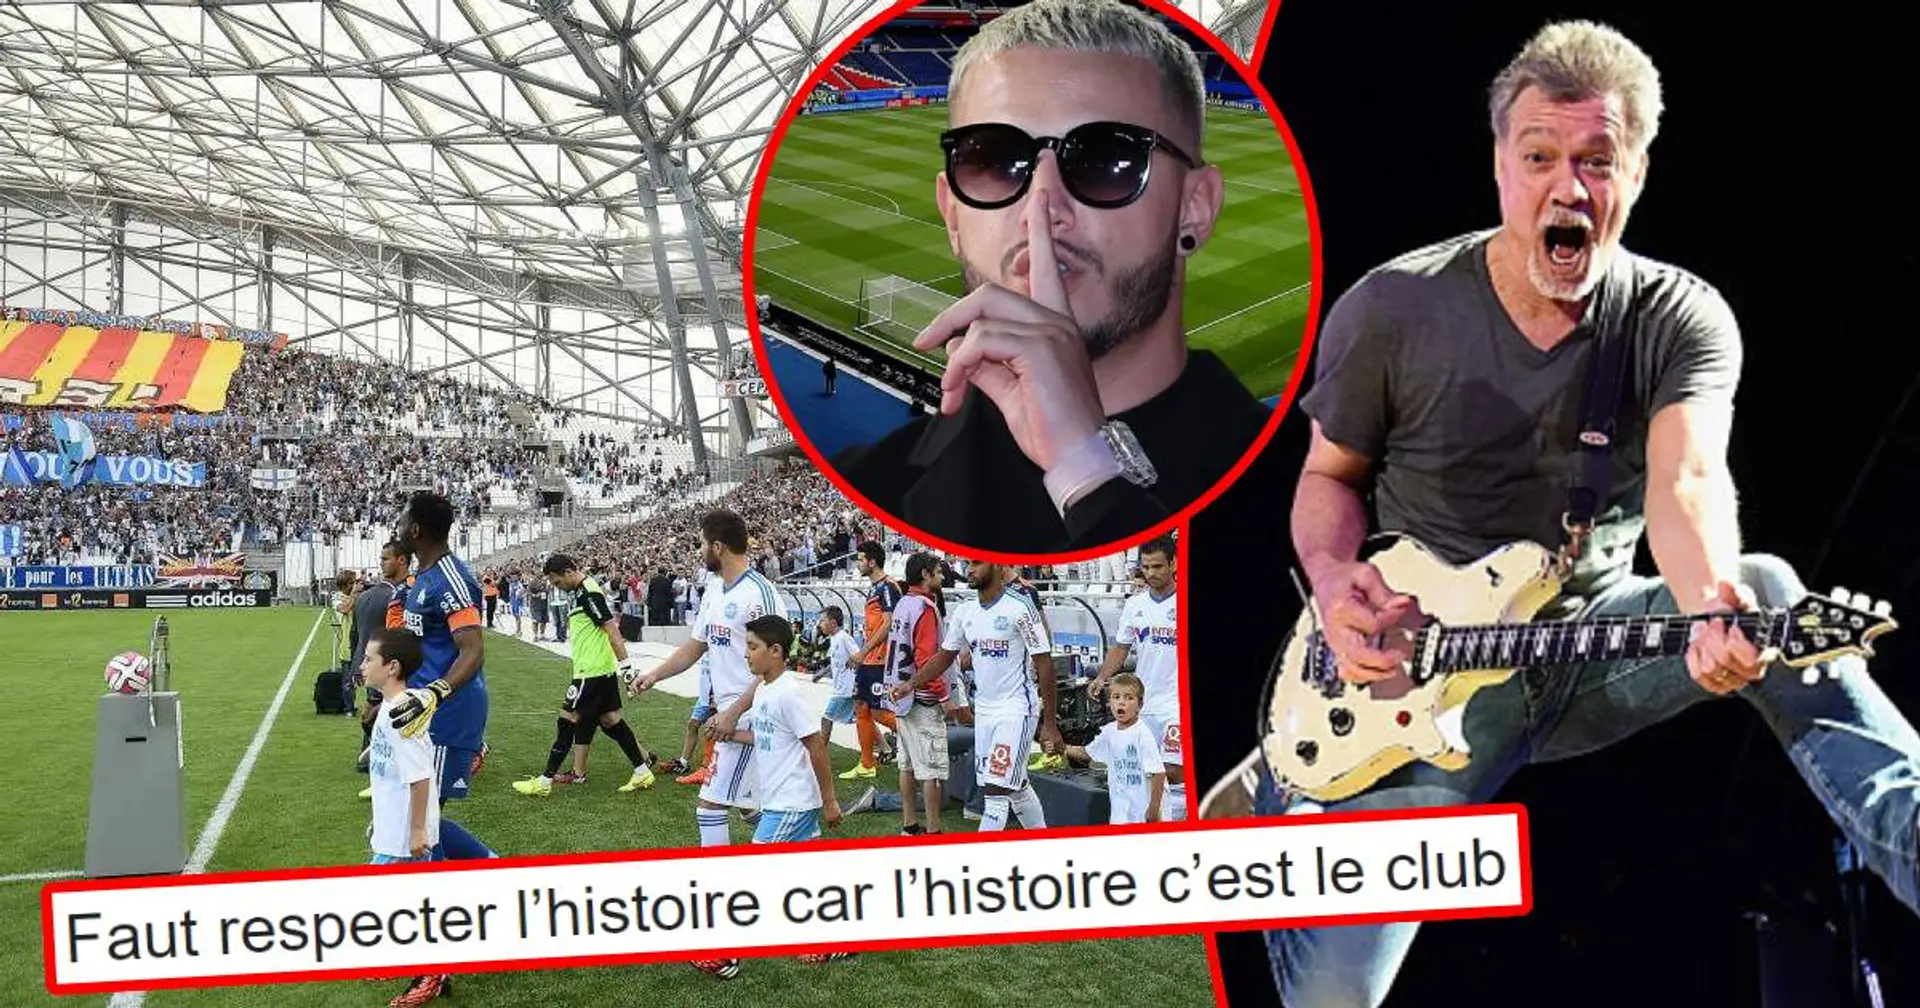 "Voilà pourquoi avant c’était le PSG et maintenant le QSG", les fans marseillais réagissent au changement de musique sur l'entrée des joueurs au Parc des Princes